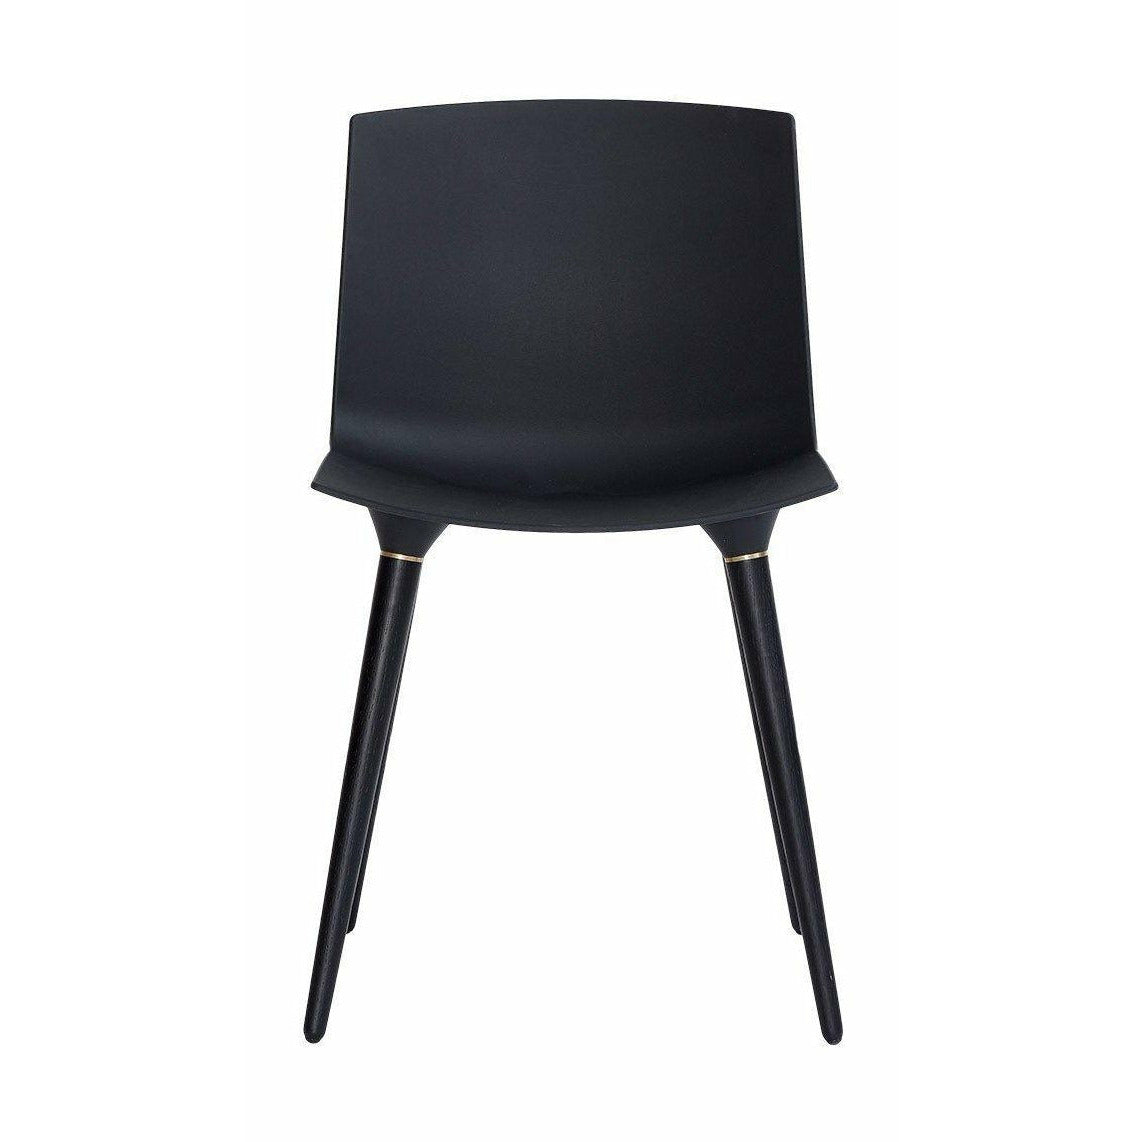 Andersen möbler tac stol svart lackerad ek, svart plaststol